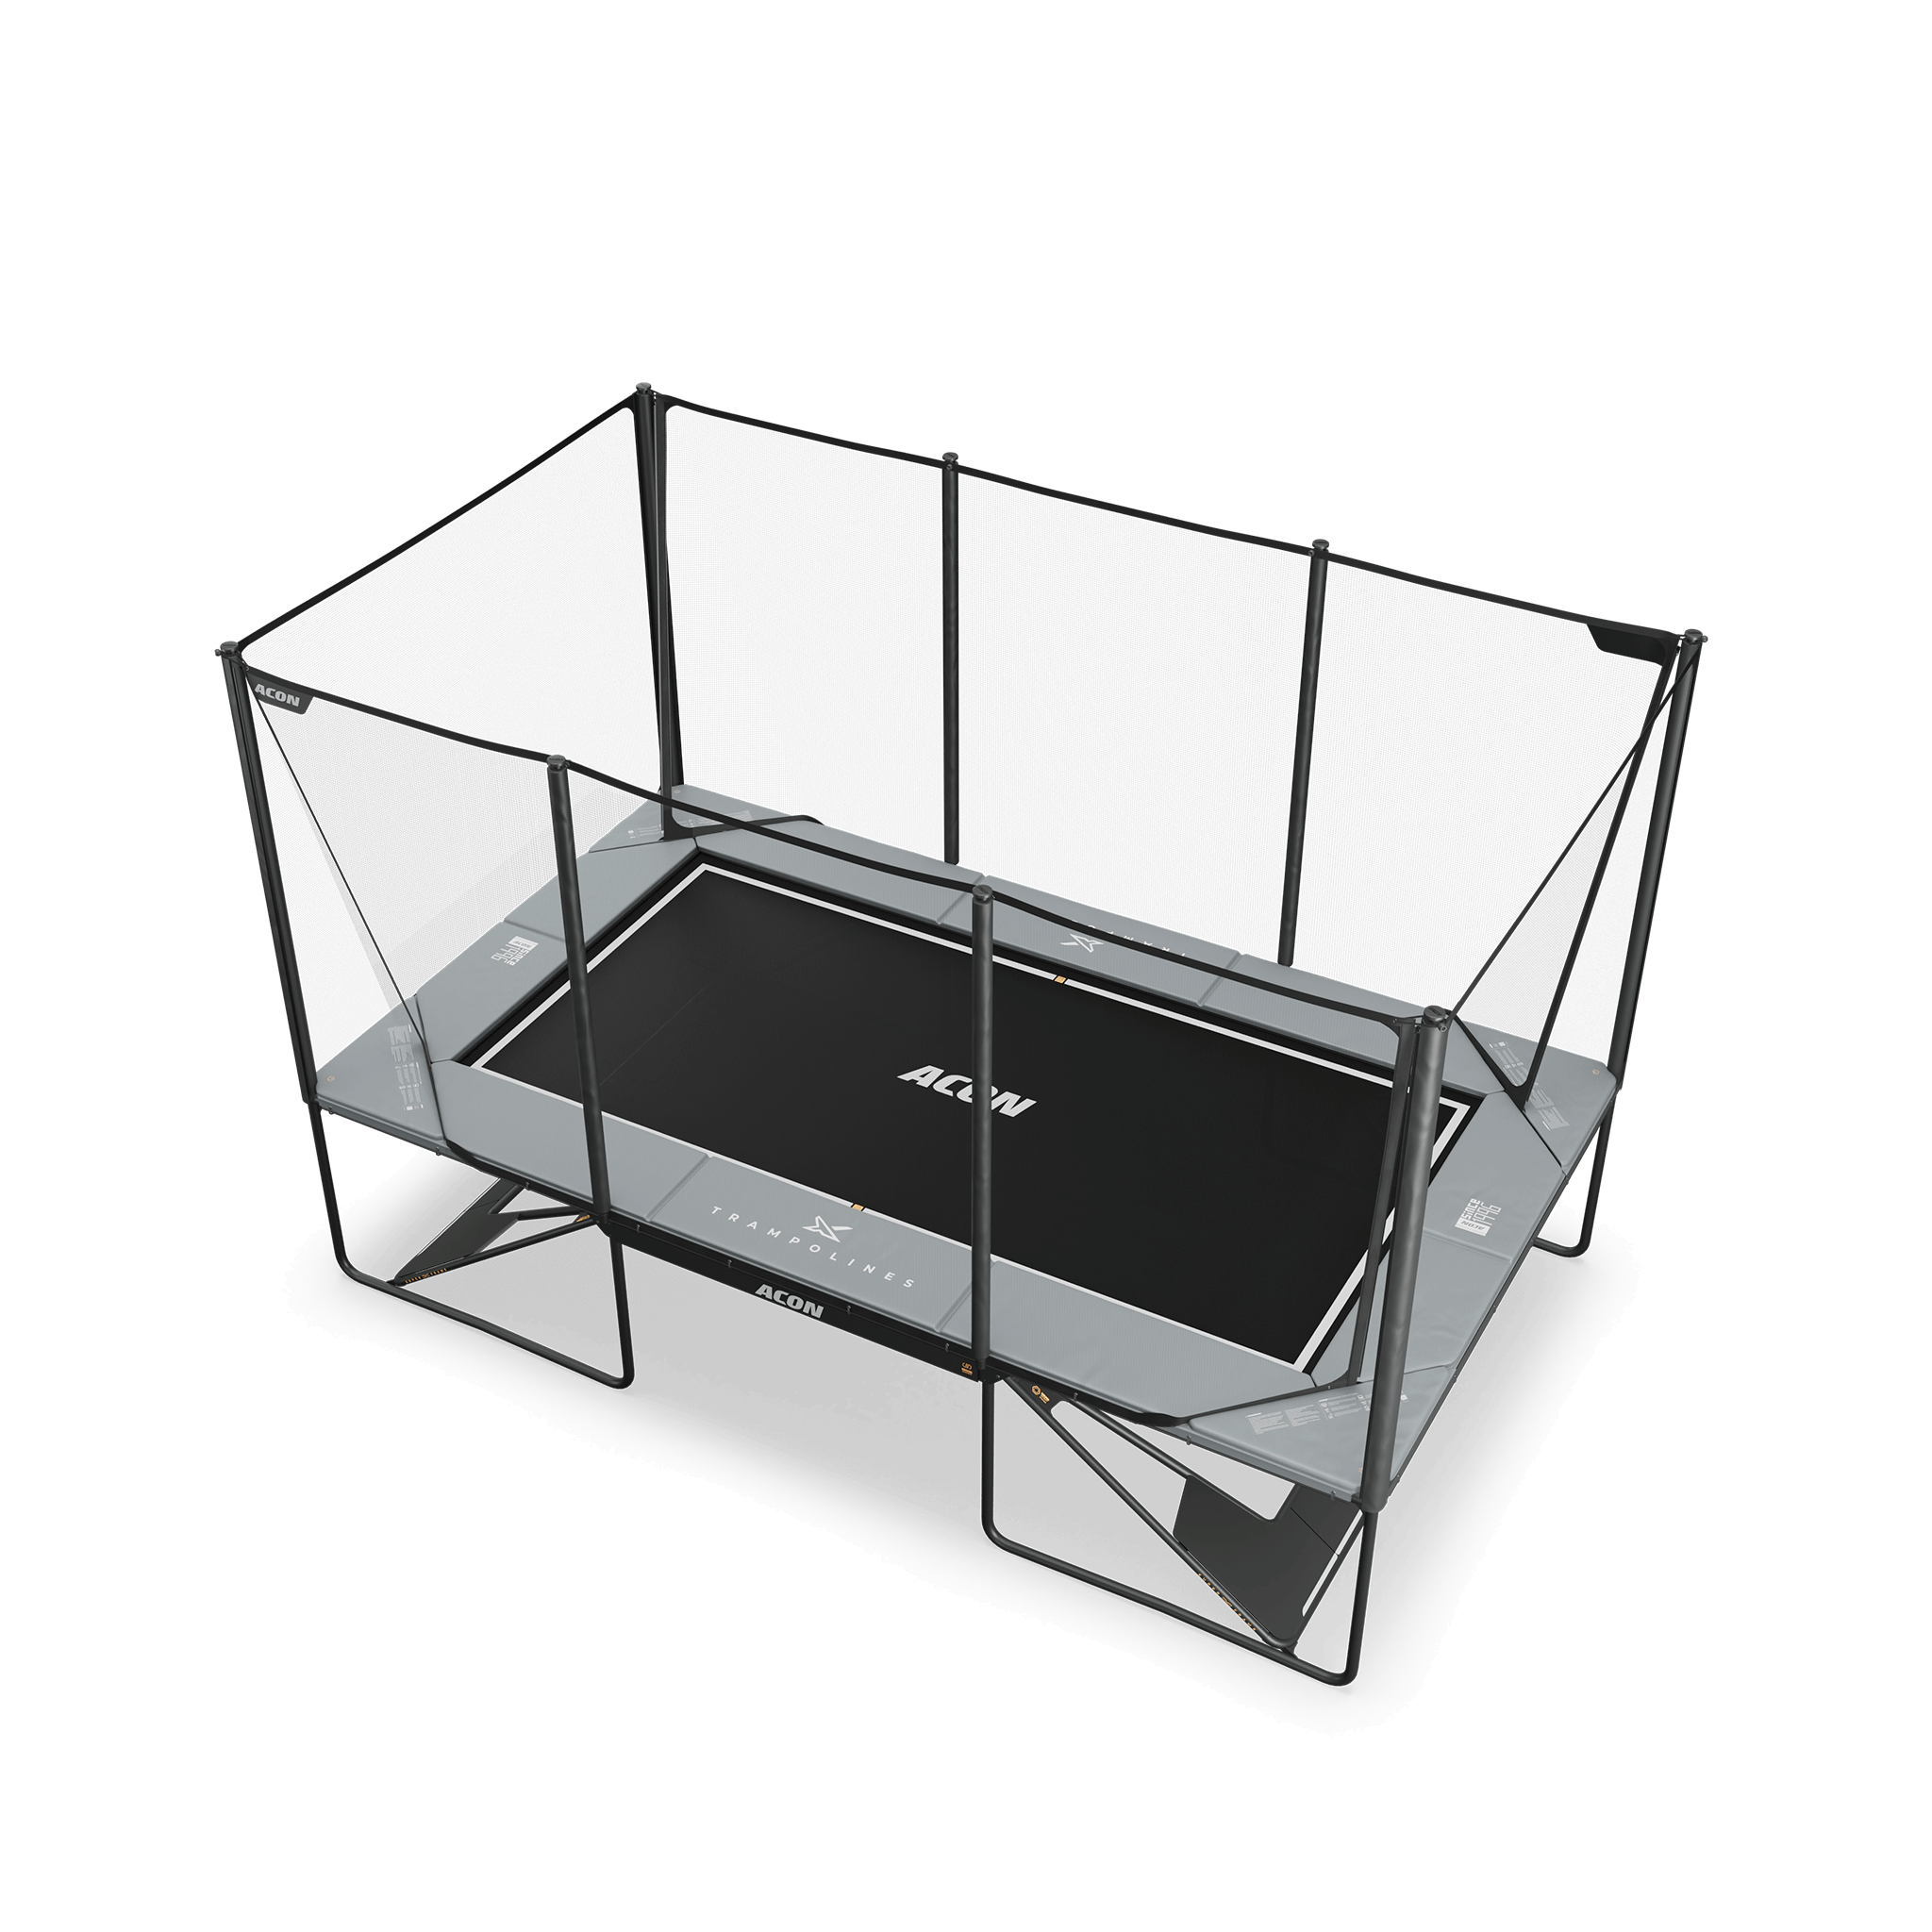 ACON X 17ft suorakulmainen trampoliini turvaverkolla ja tikkailla, vaaleanharmaa.